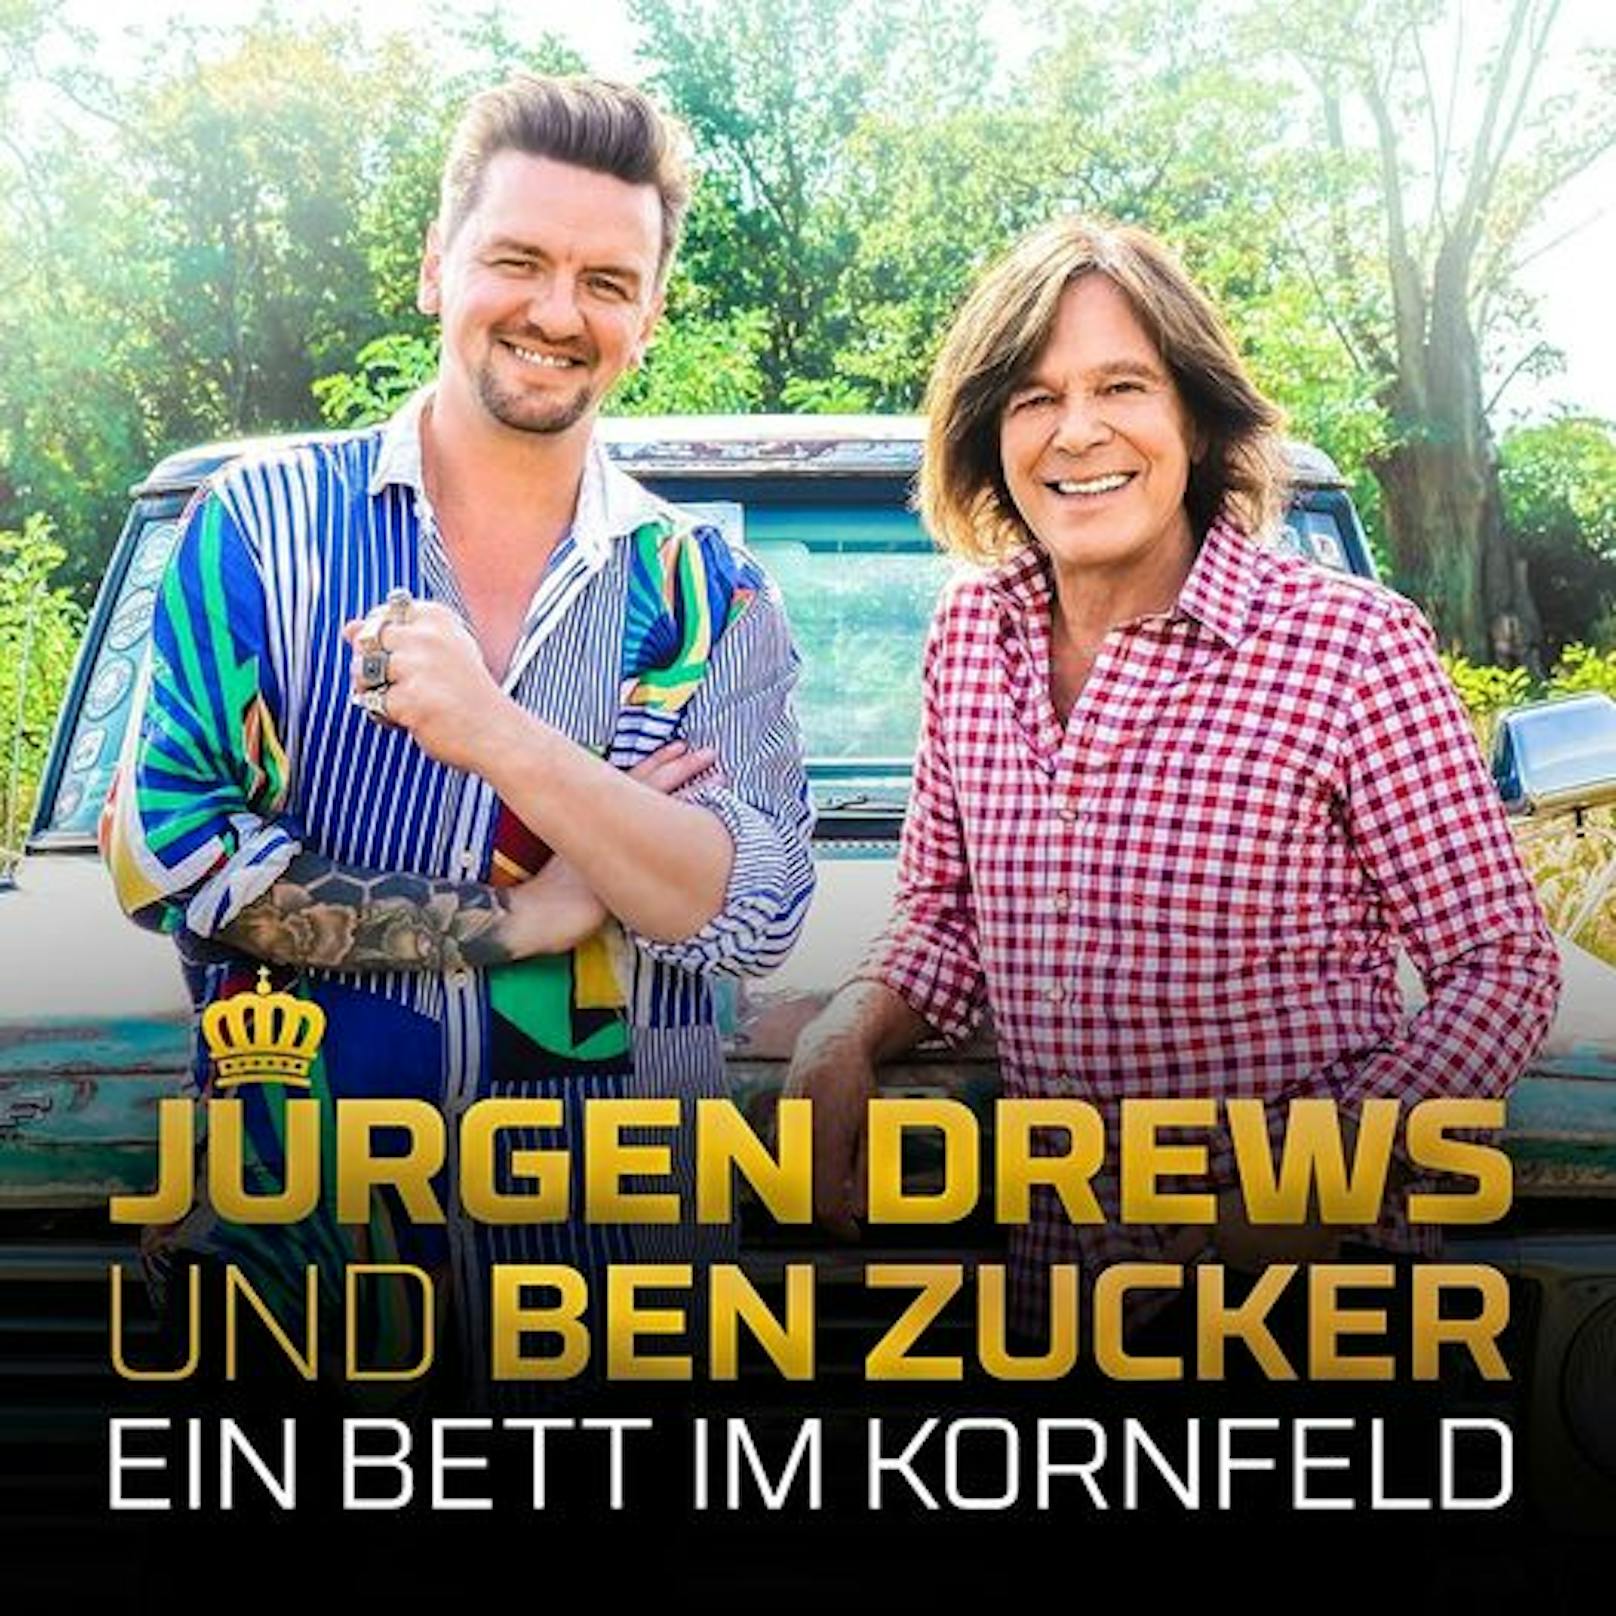 2020 coverten Ben und Jürgen Drews den Klassiker "Ein Bett im Kornfeld"